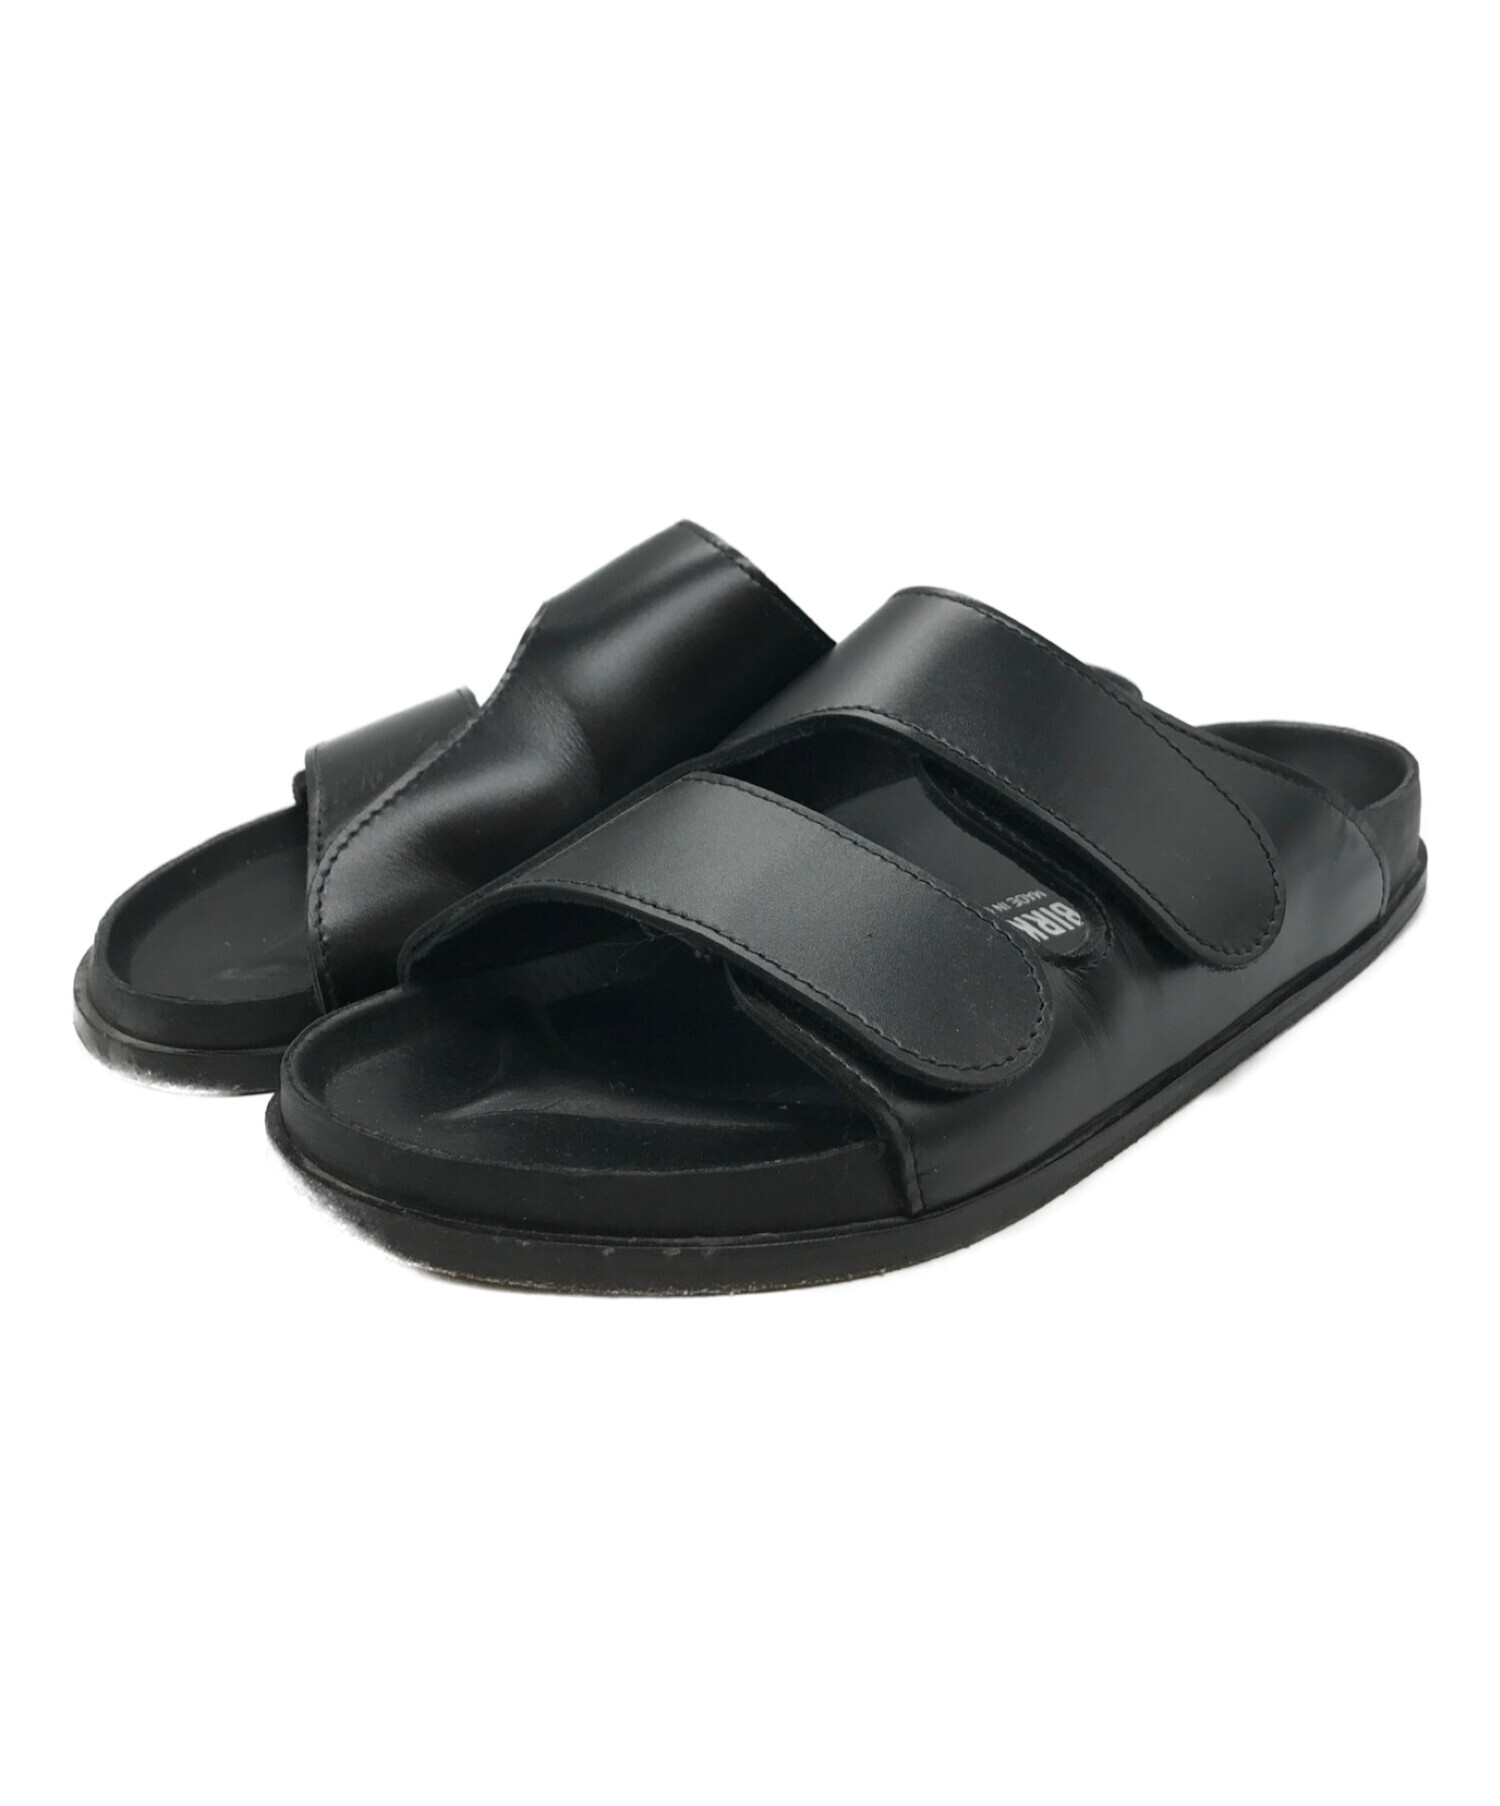 BIRKENSTOCK×TOOGOOD (ビルケンシュトック×トゥーグッド) The Forager Lether shoes　 コラボレザーストラップサンダル ブラック サイズ:28.5cm